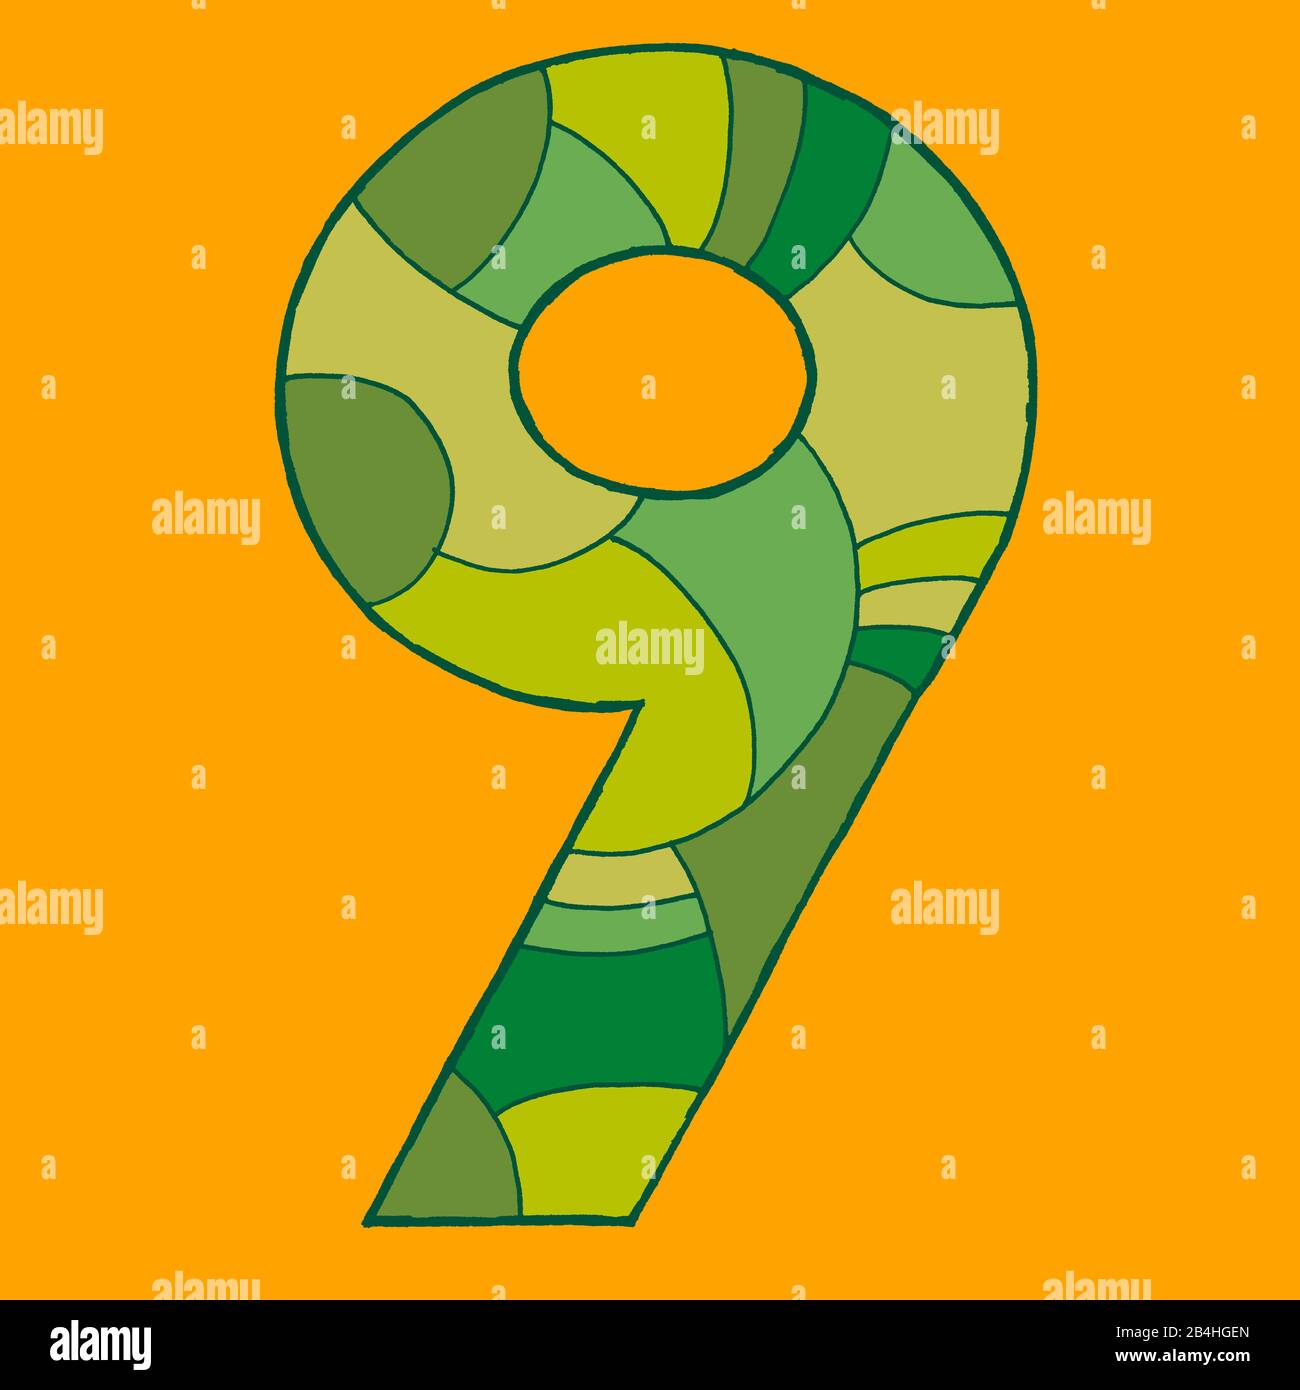 Il numero 9, disegnato come illustrazione vettoriale, in sfumature verdastre su sfondo giallo in stile pop art Foto Stock